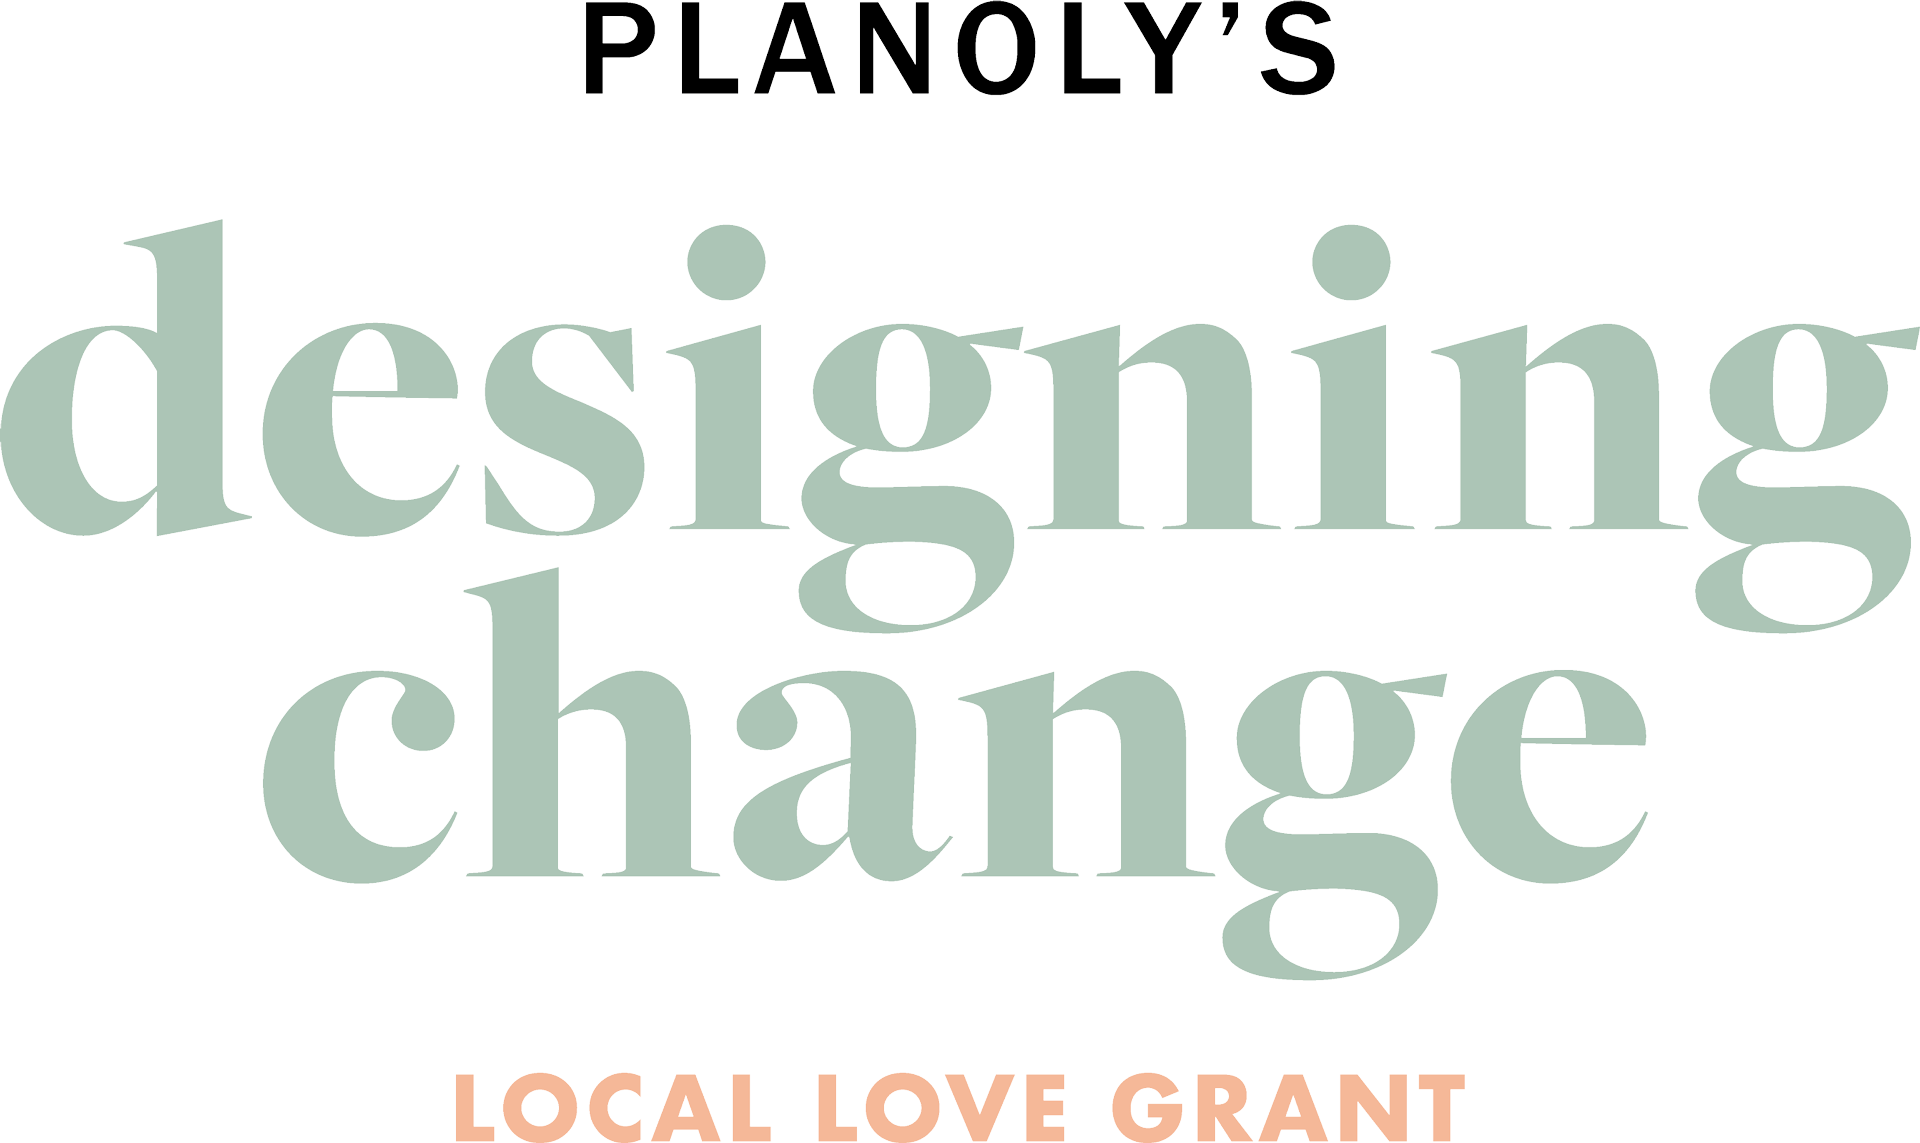 Designing Change